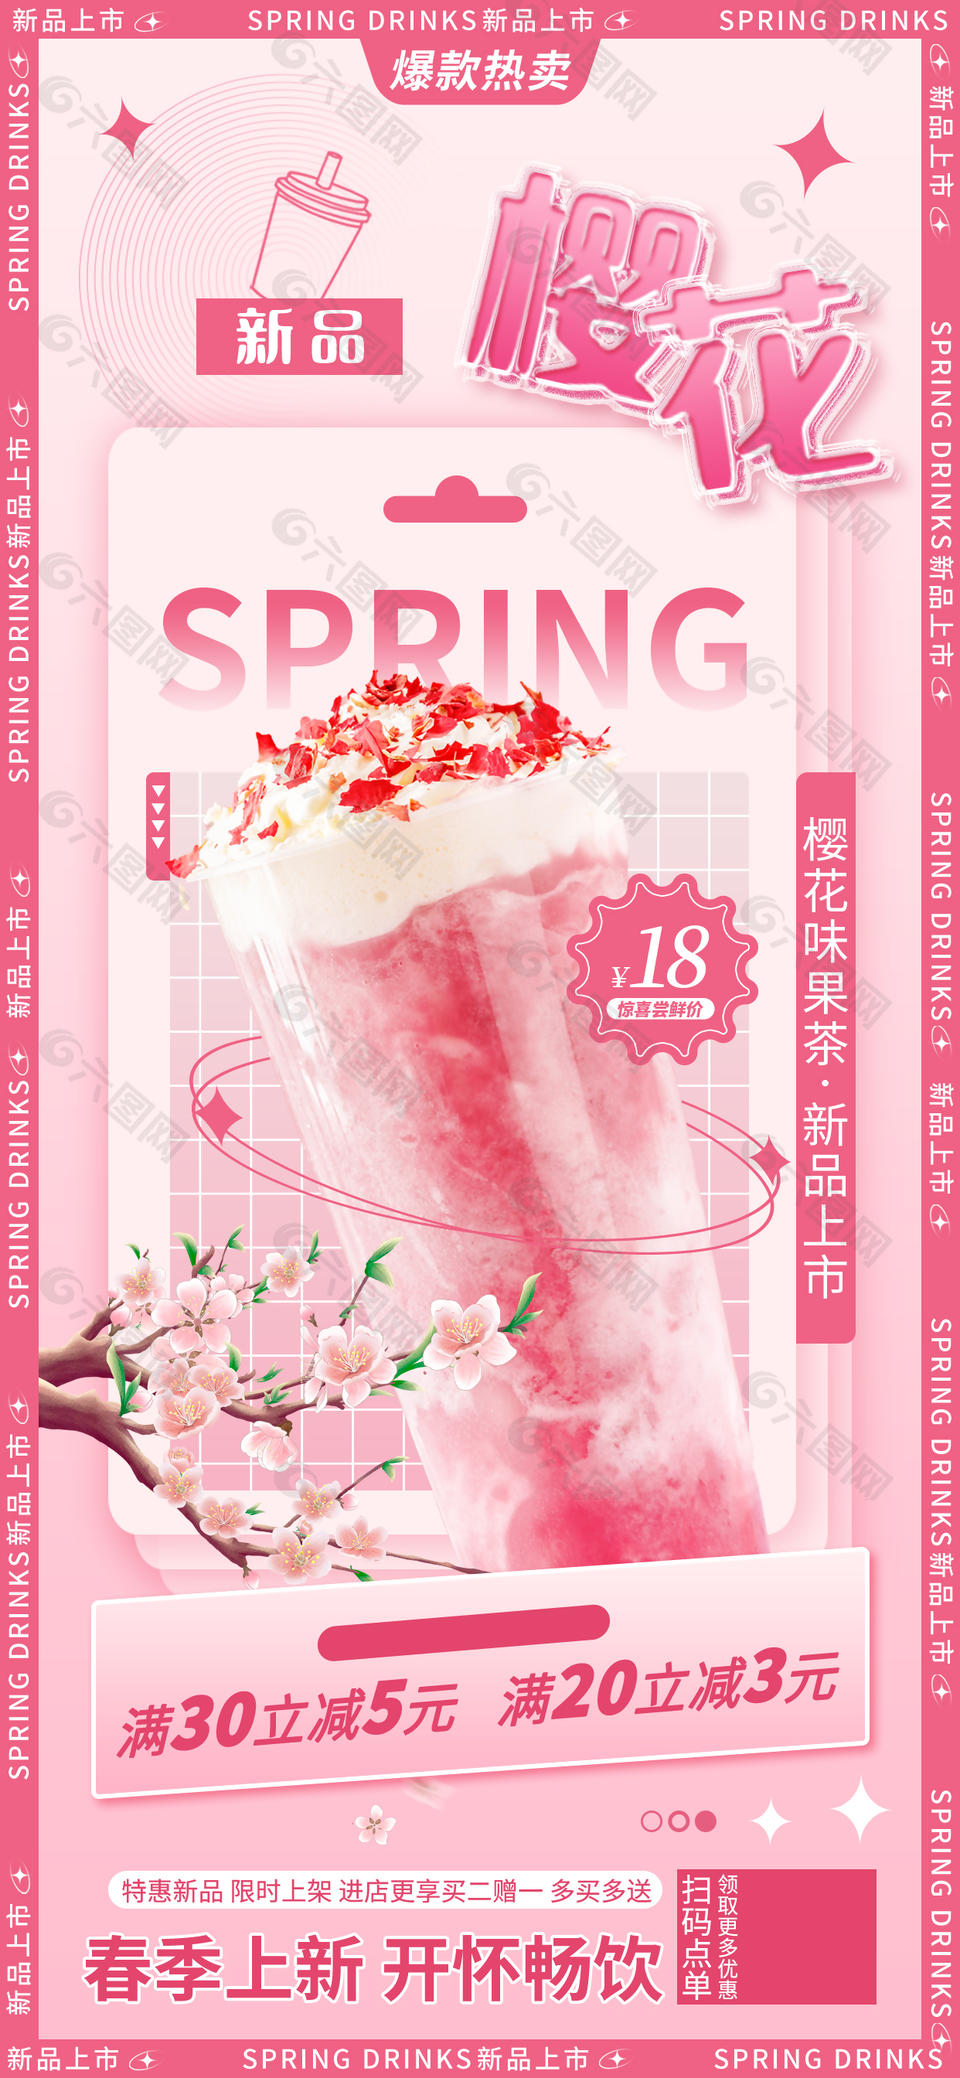 樱花味果茶新品尝鲜促销宣传海报素材